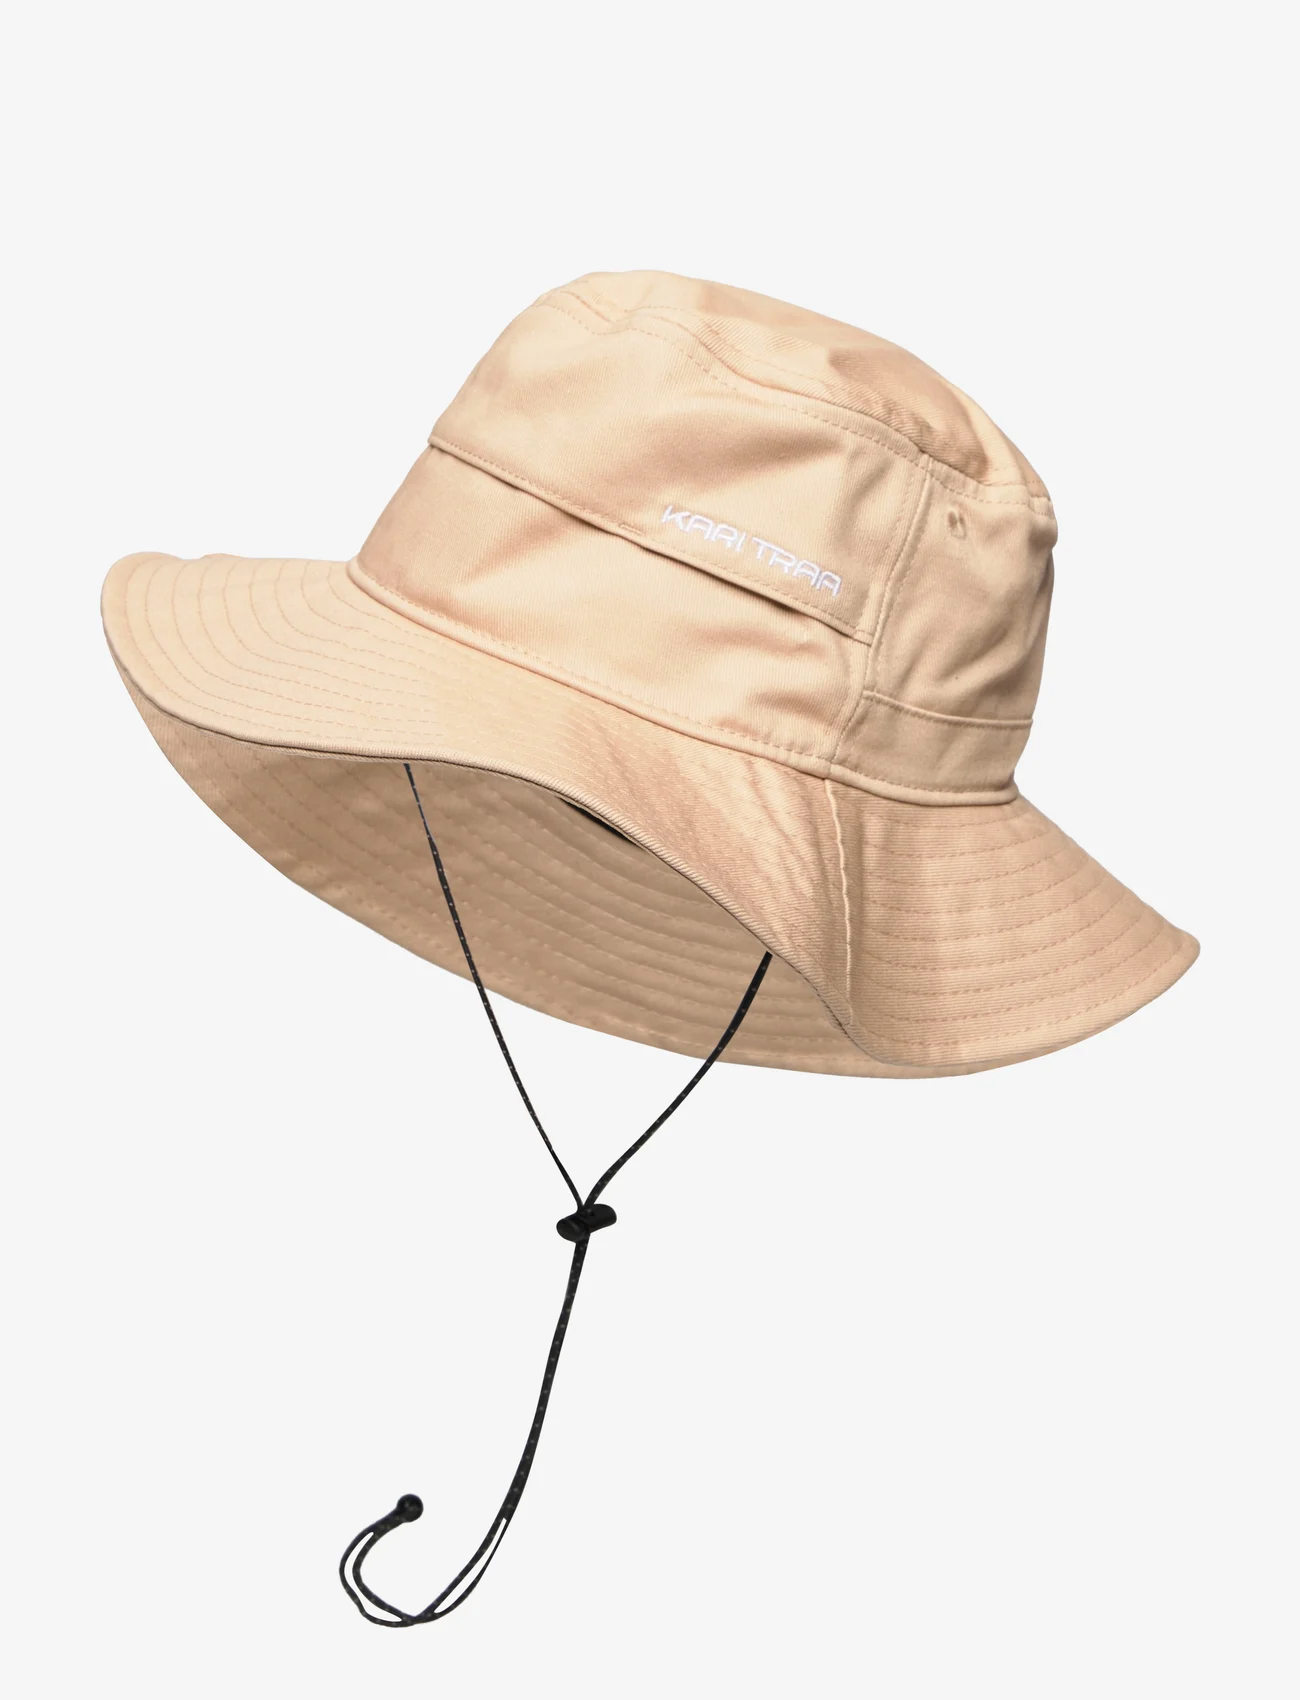 Kari Traa - HIKING HAT - skrybėlės - oat - 1